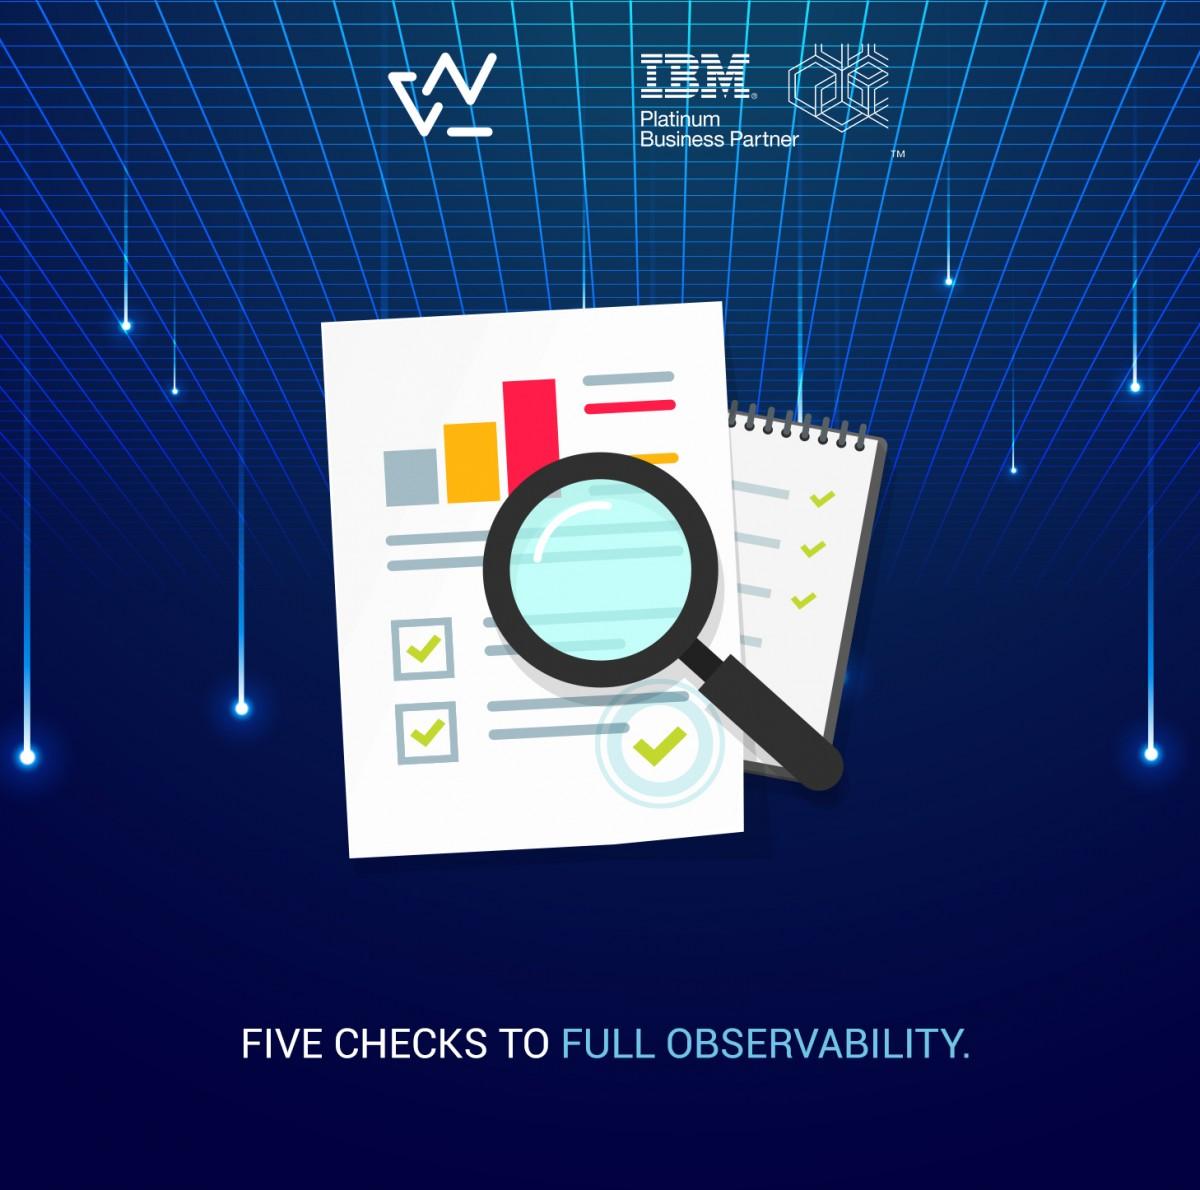 Five checks towards full observability ✔